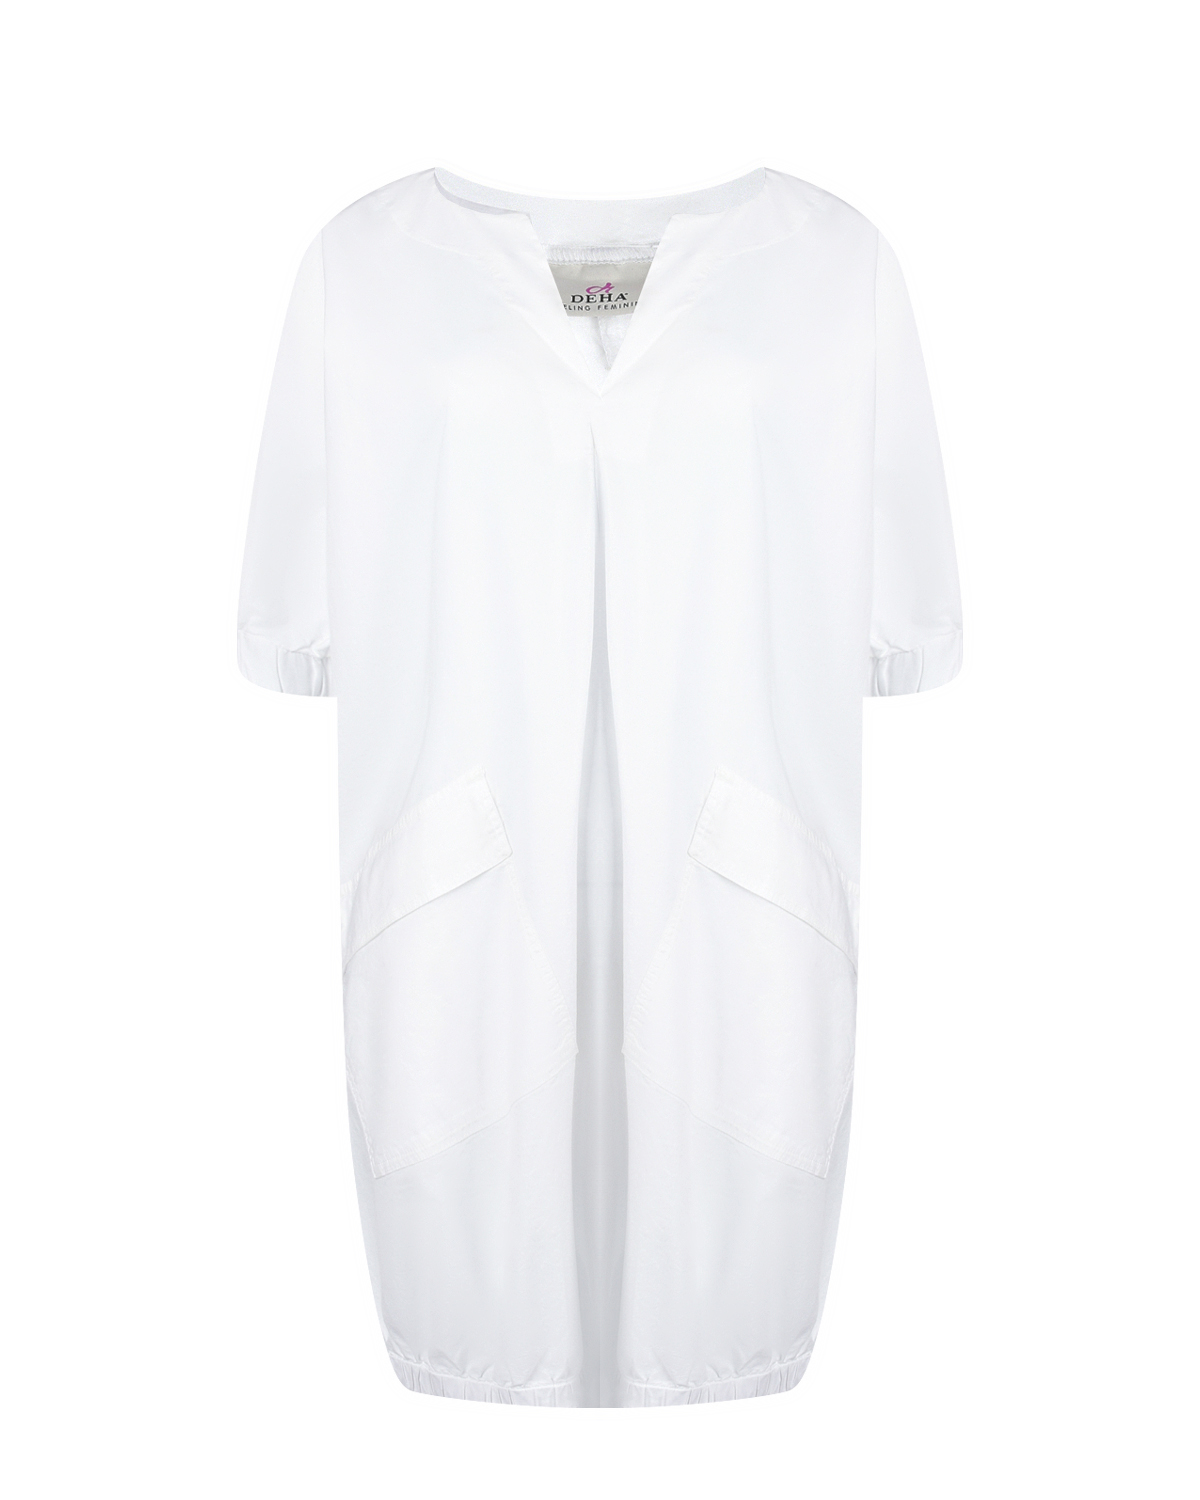 Белое платье-футболка с накладными карманами Deha, размер 40, цвет белый - фото 1